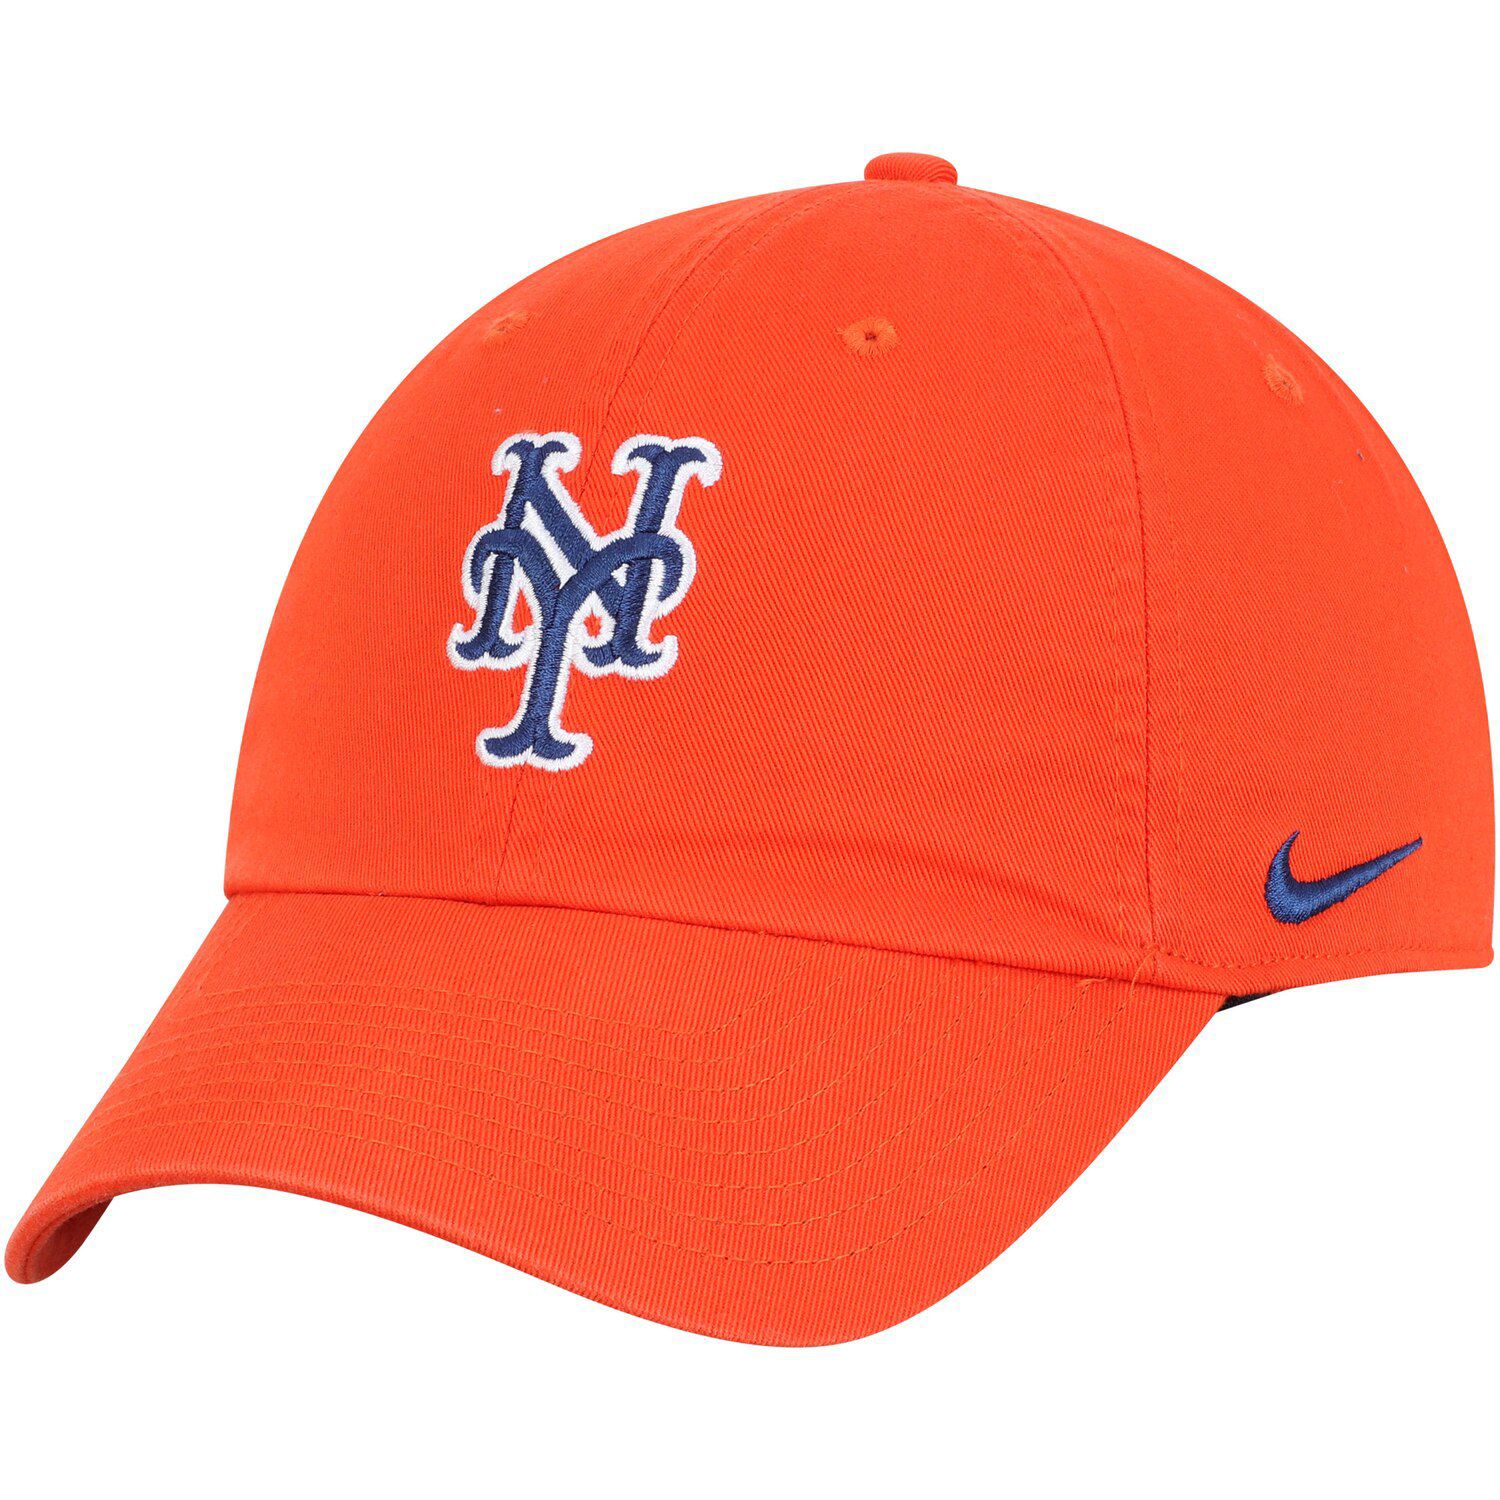 Men's Nike Orange New York Mets MLB 